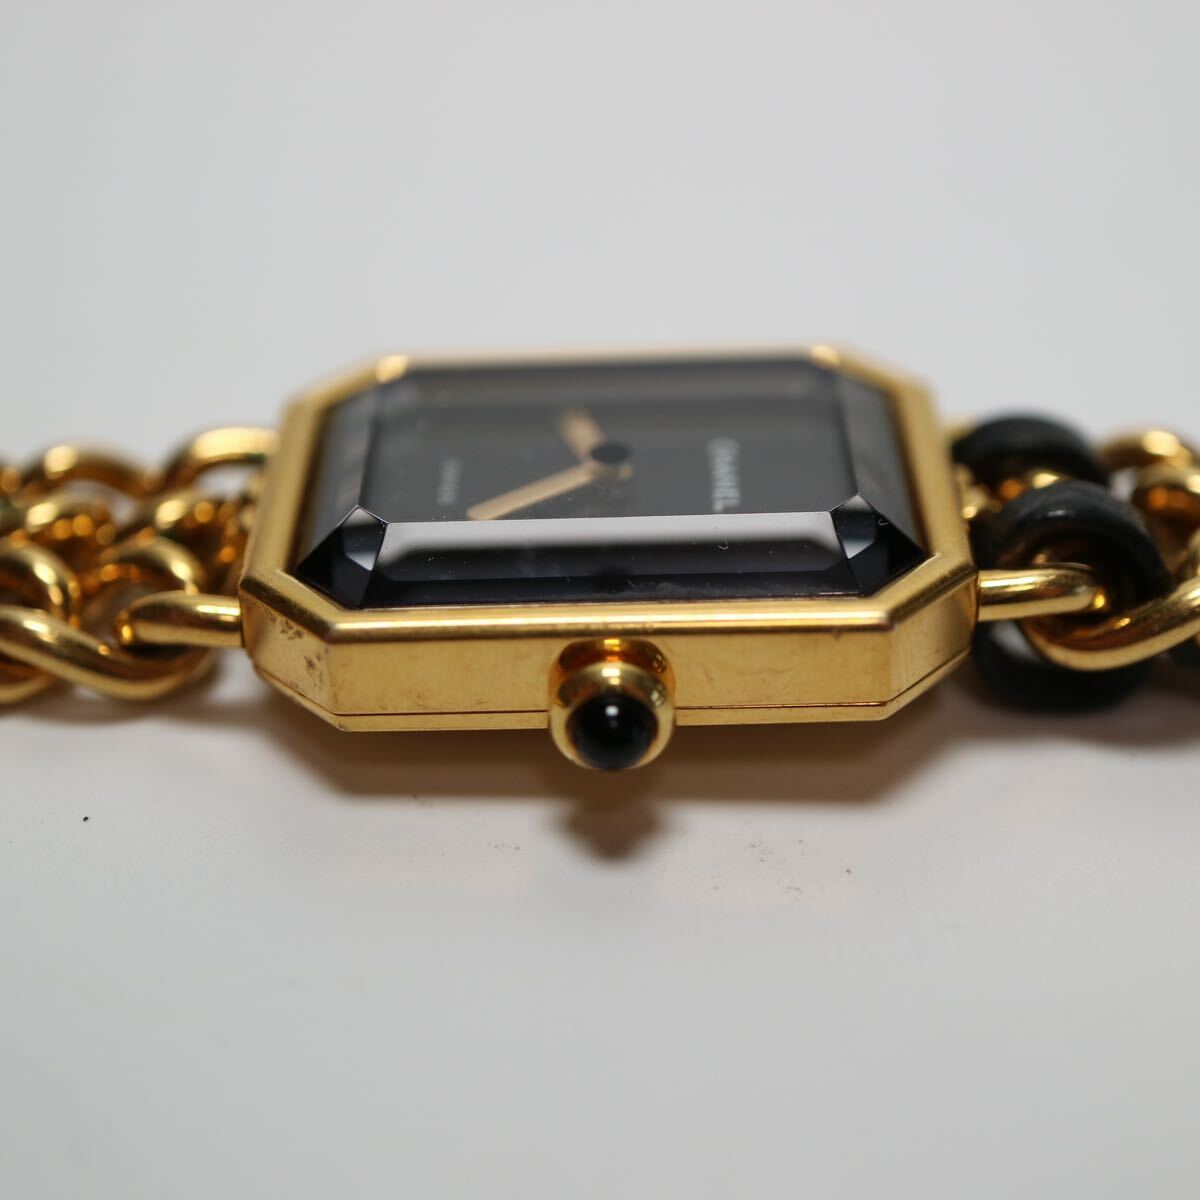 25) CHANEL Chanel Premiere PARIS PLAQUE OR G 20 M quartz wristwatch lady's black face cut glass Junk 